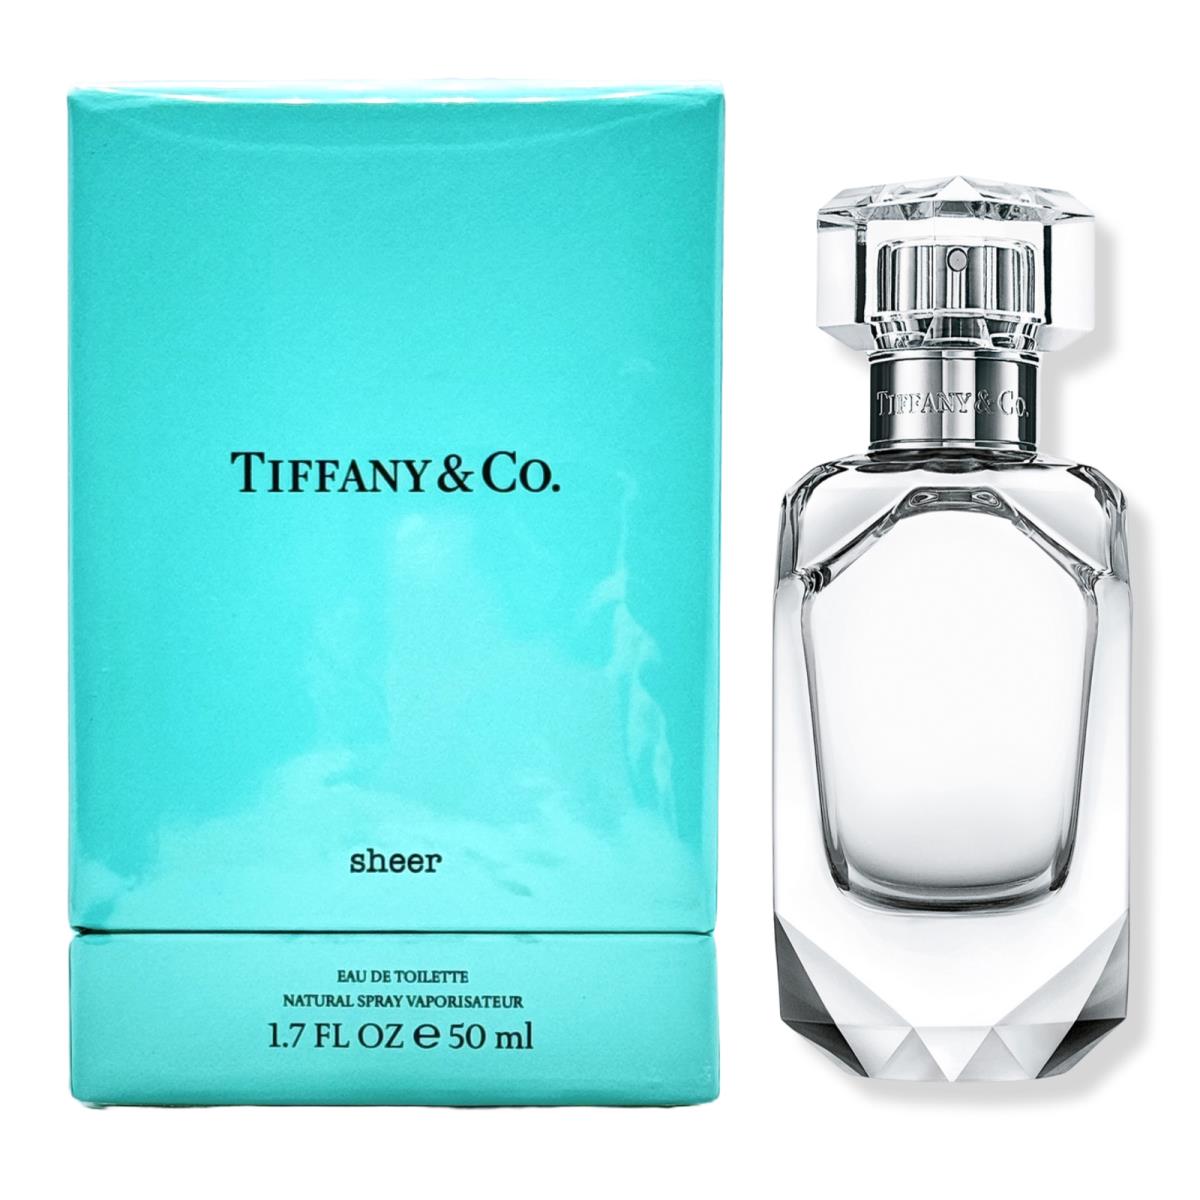 Tiffany Co. Sheer For Women 1.7 oz Eau de Toilette Spray